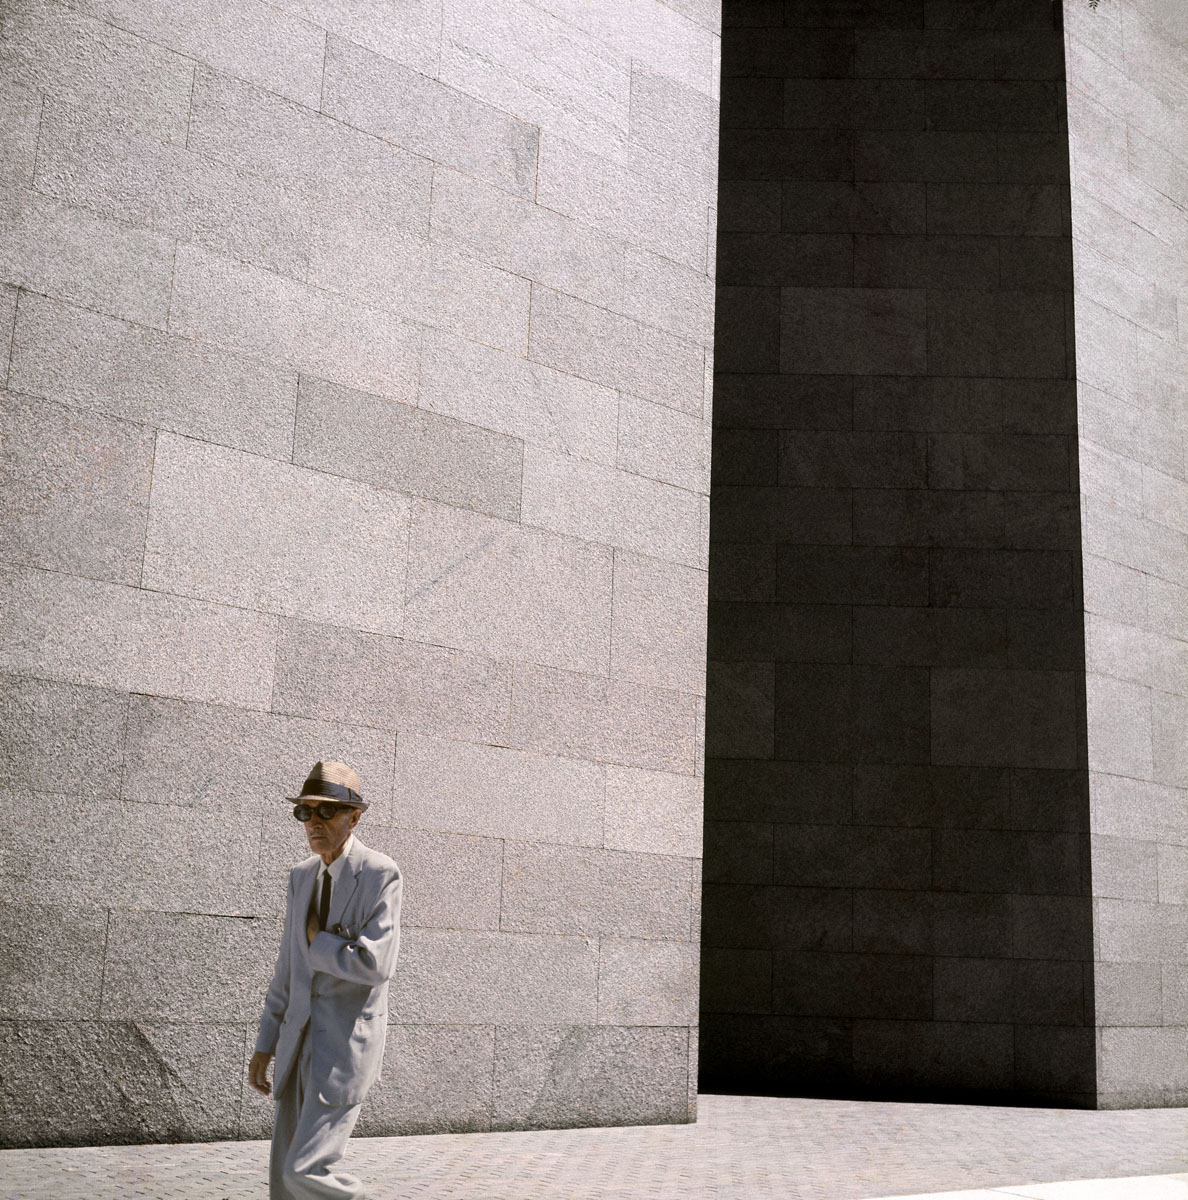 La photographie montre un homme chapeauté marchant devant un immeuble.